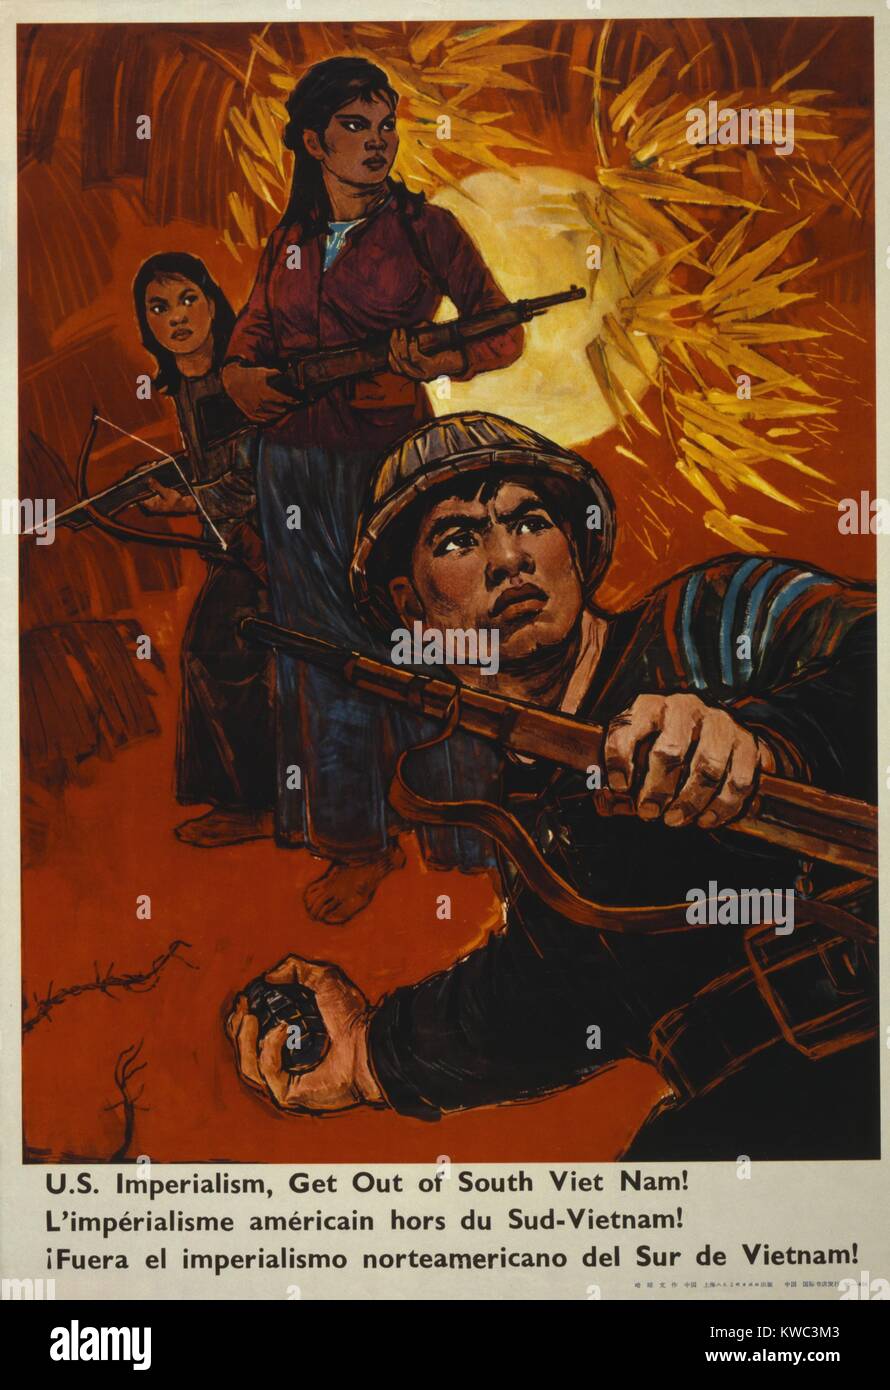 Das kommunistische China Plakat liest", der US-Imperialismus, aus dem südlichen Vietnam!" Ca. 1970. Plakat zeigt Männer und Frauen Soldaten in Vietnam in heroischen Posen in einem Dschungel. (BSLOC 2015 14 136) Stockfoto